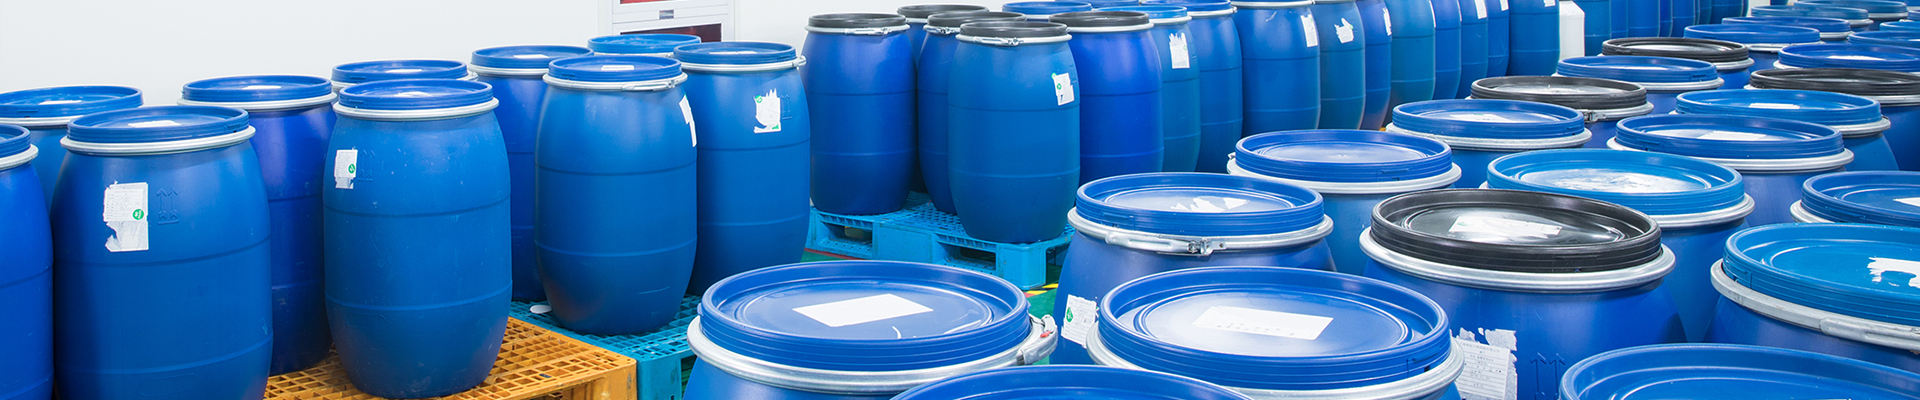 many blue bucket filled with acrylic polymer emulsion, vae emulsion etc.